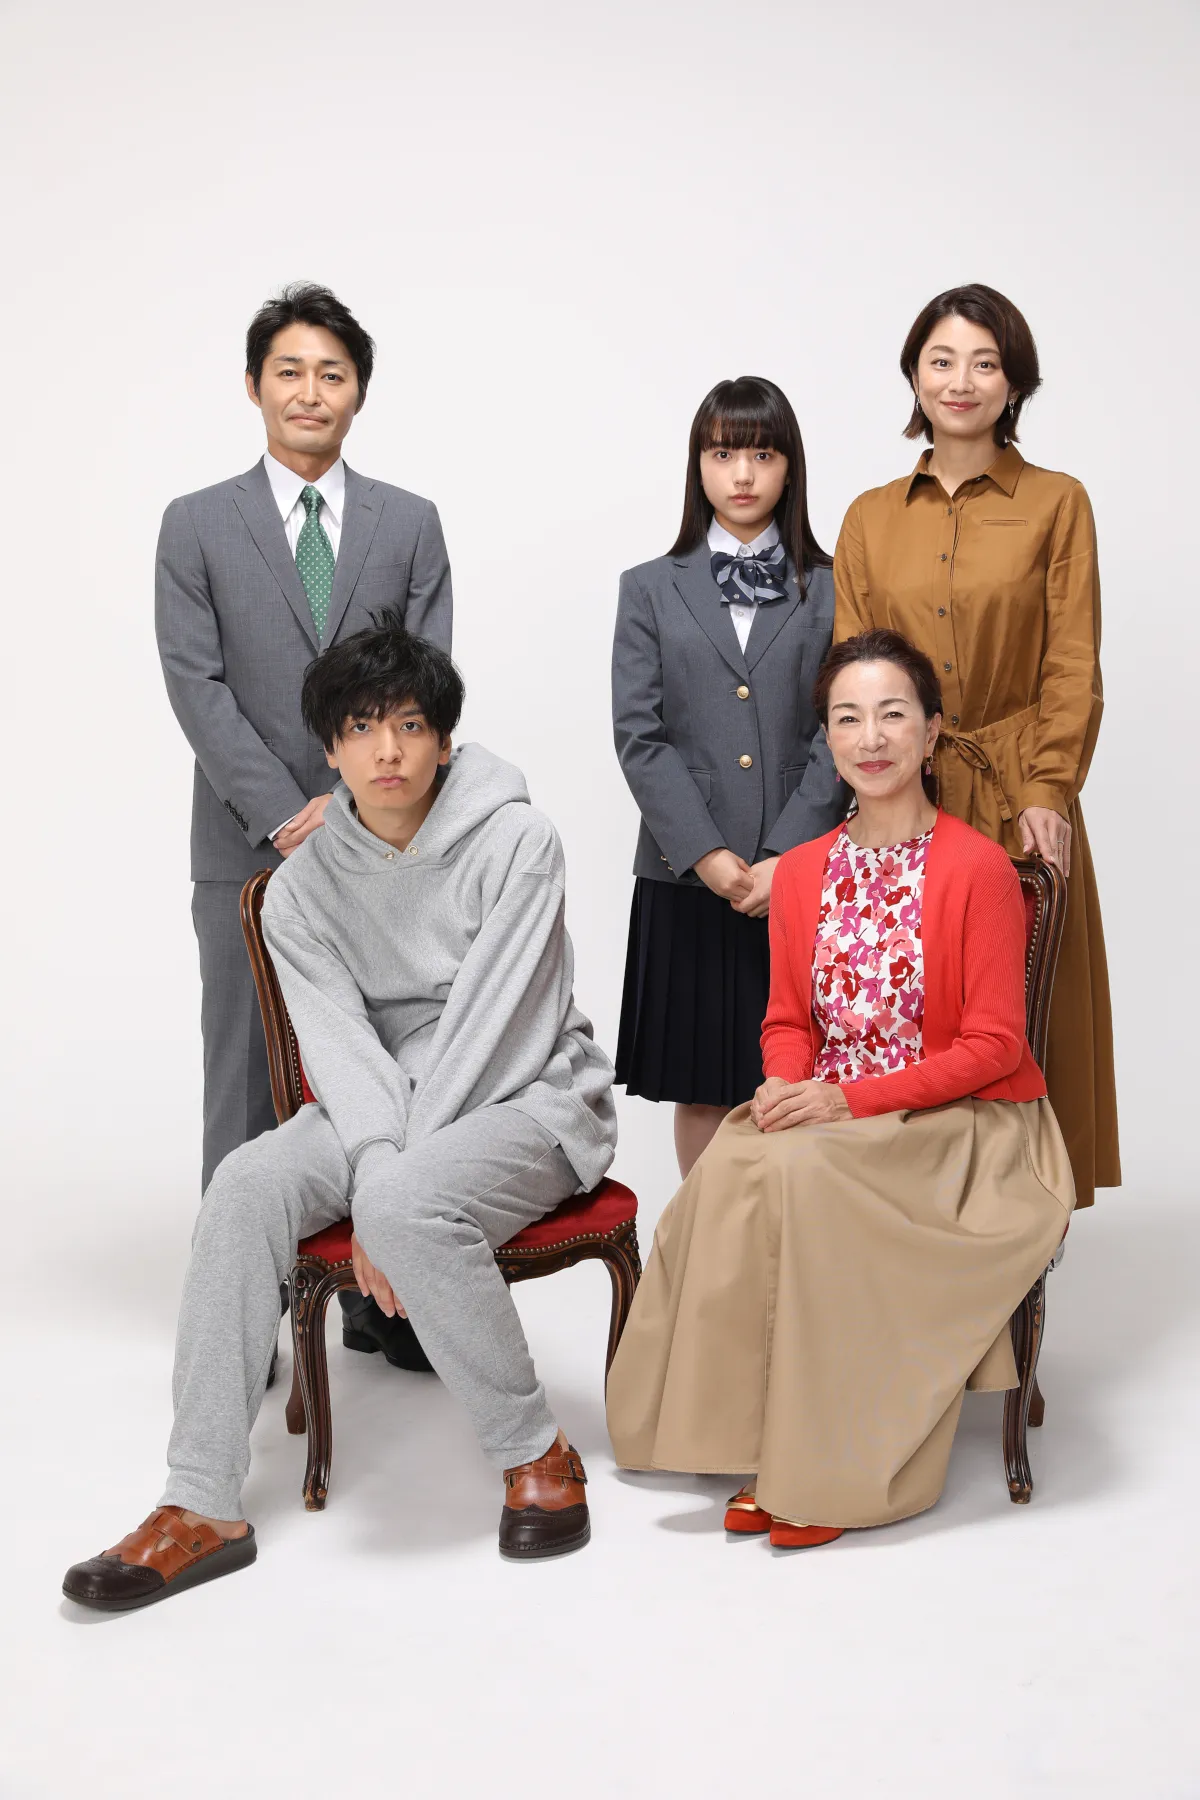 「俺の話は長い」生田斗真演じるダメ男・満の家族役キャストが発表された